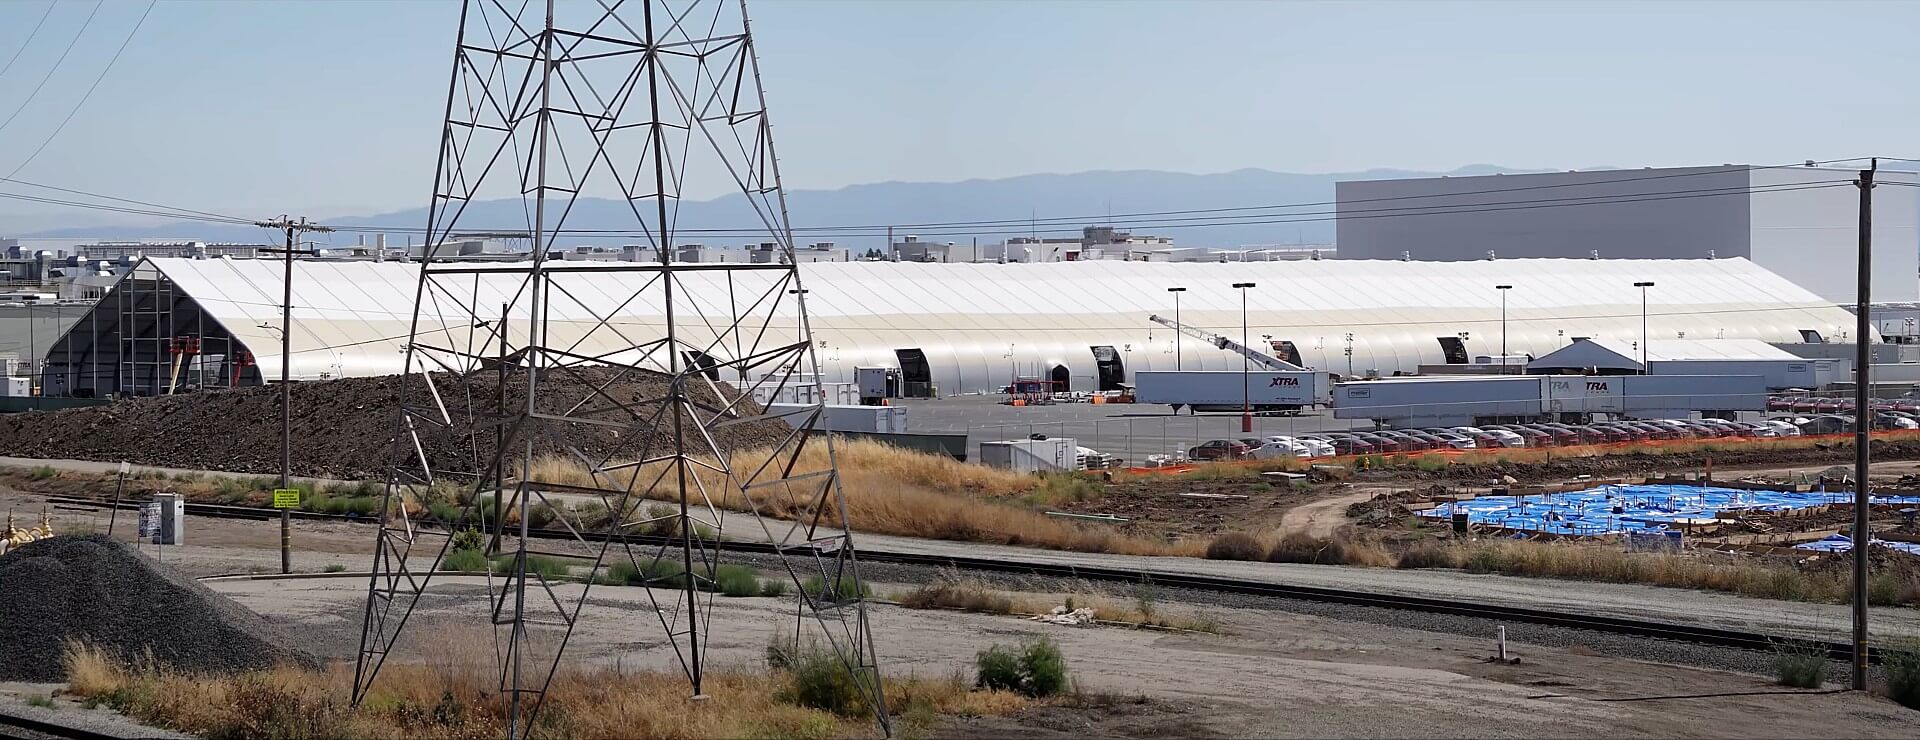 Tesla ajoute une autre tente mystérieuse à l’usine de Fremont